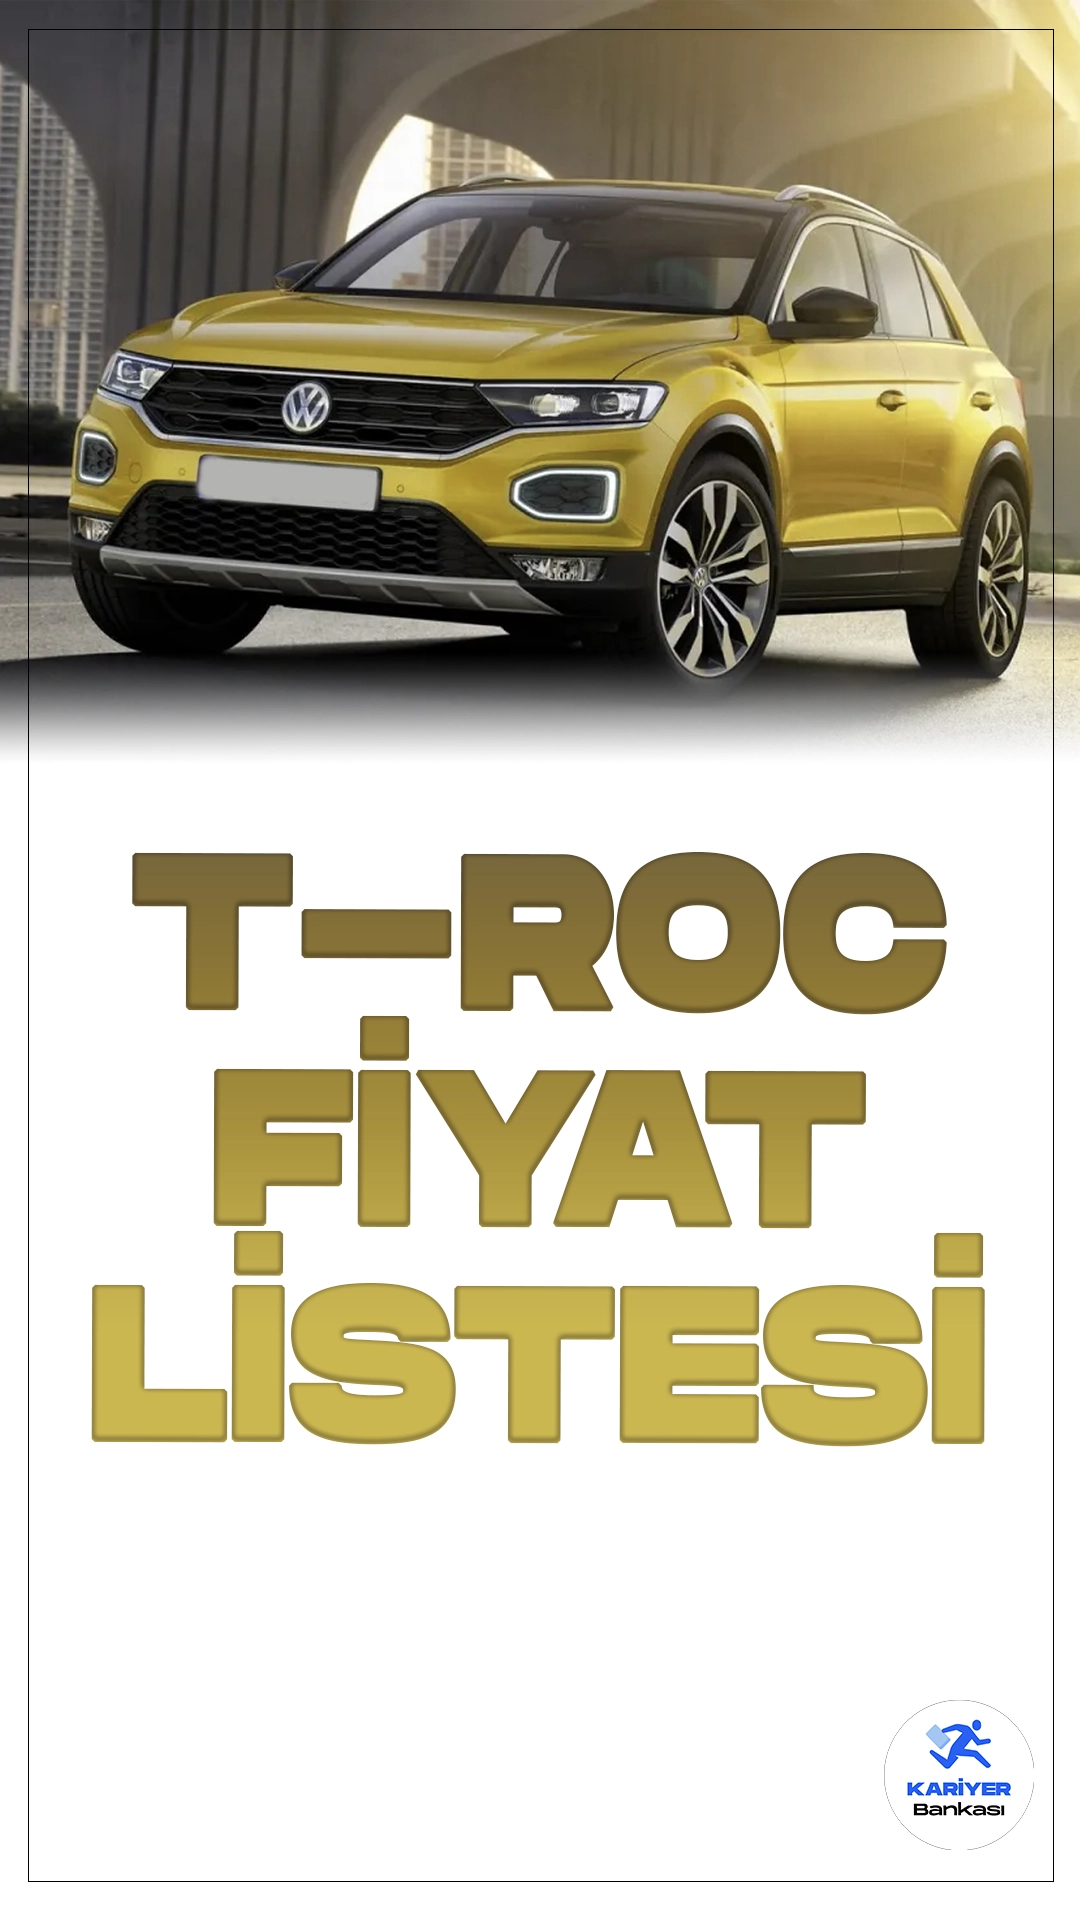 Volkswagen T-Roc Temmuz 2024 Fiyat Listesi Yayımlandı.Volkswagen’in SUV segmentindeki iddialı modeli T-Roc, hem tasarımıyla hem de teknolojik donanımlarıyla dikkat çekiyor. Şehir içi kullanımdan uzun yolculuklara kadar her türlü ihtiyaca cevap veren T-Roc, kompakt SUV sınıfında güçlü bir seçenek sunuyor.